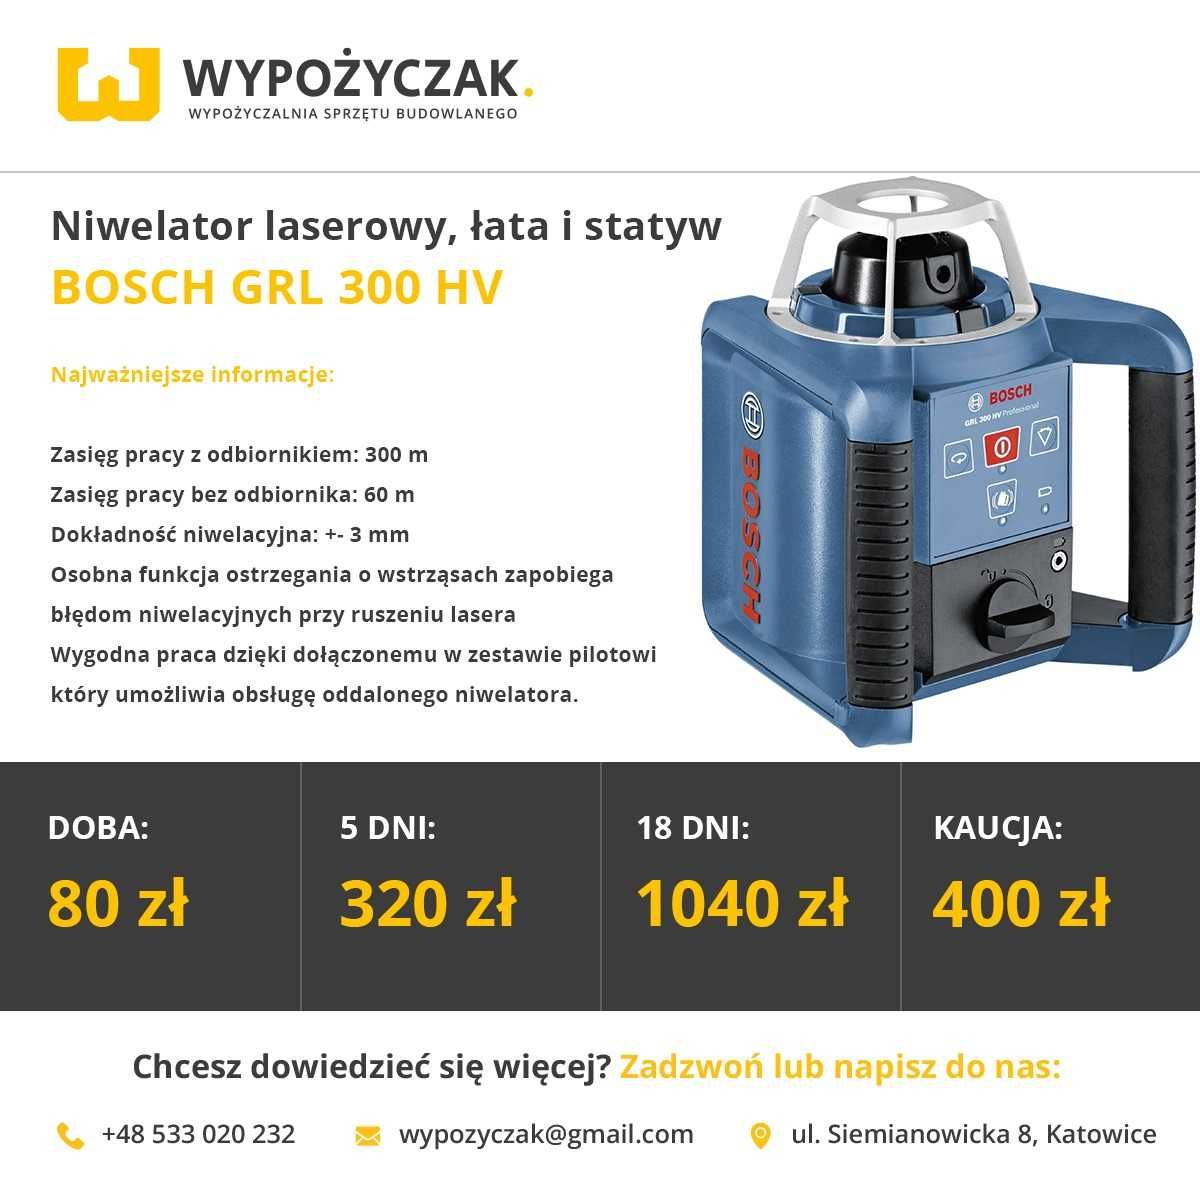 Kamera termowizyjna inspekcyjna niwelator laserowy optyczny - WYNAJEM